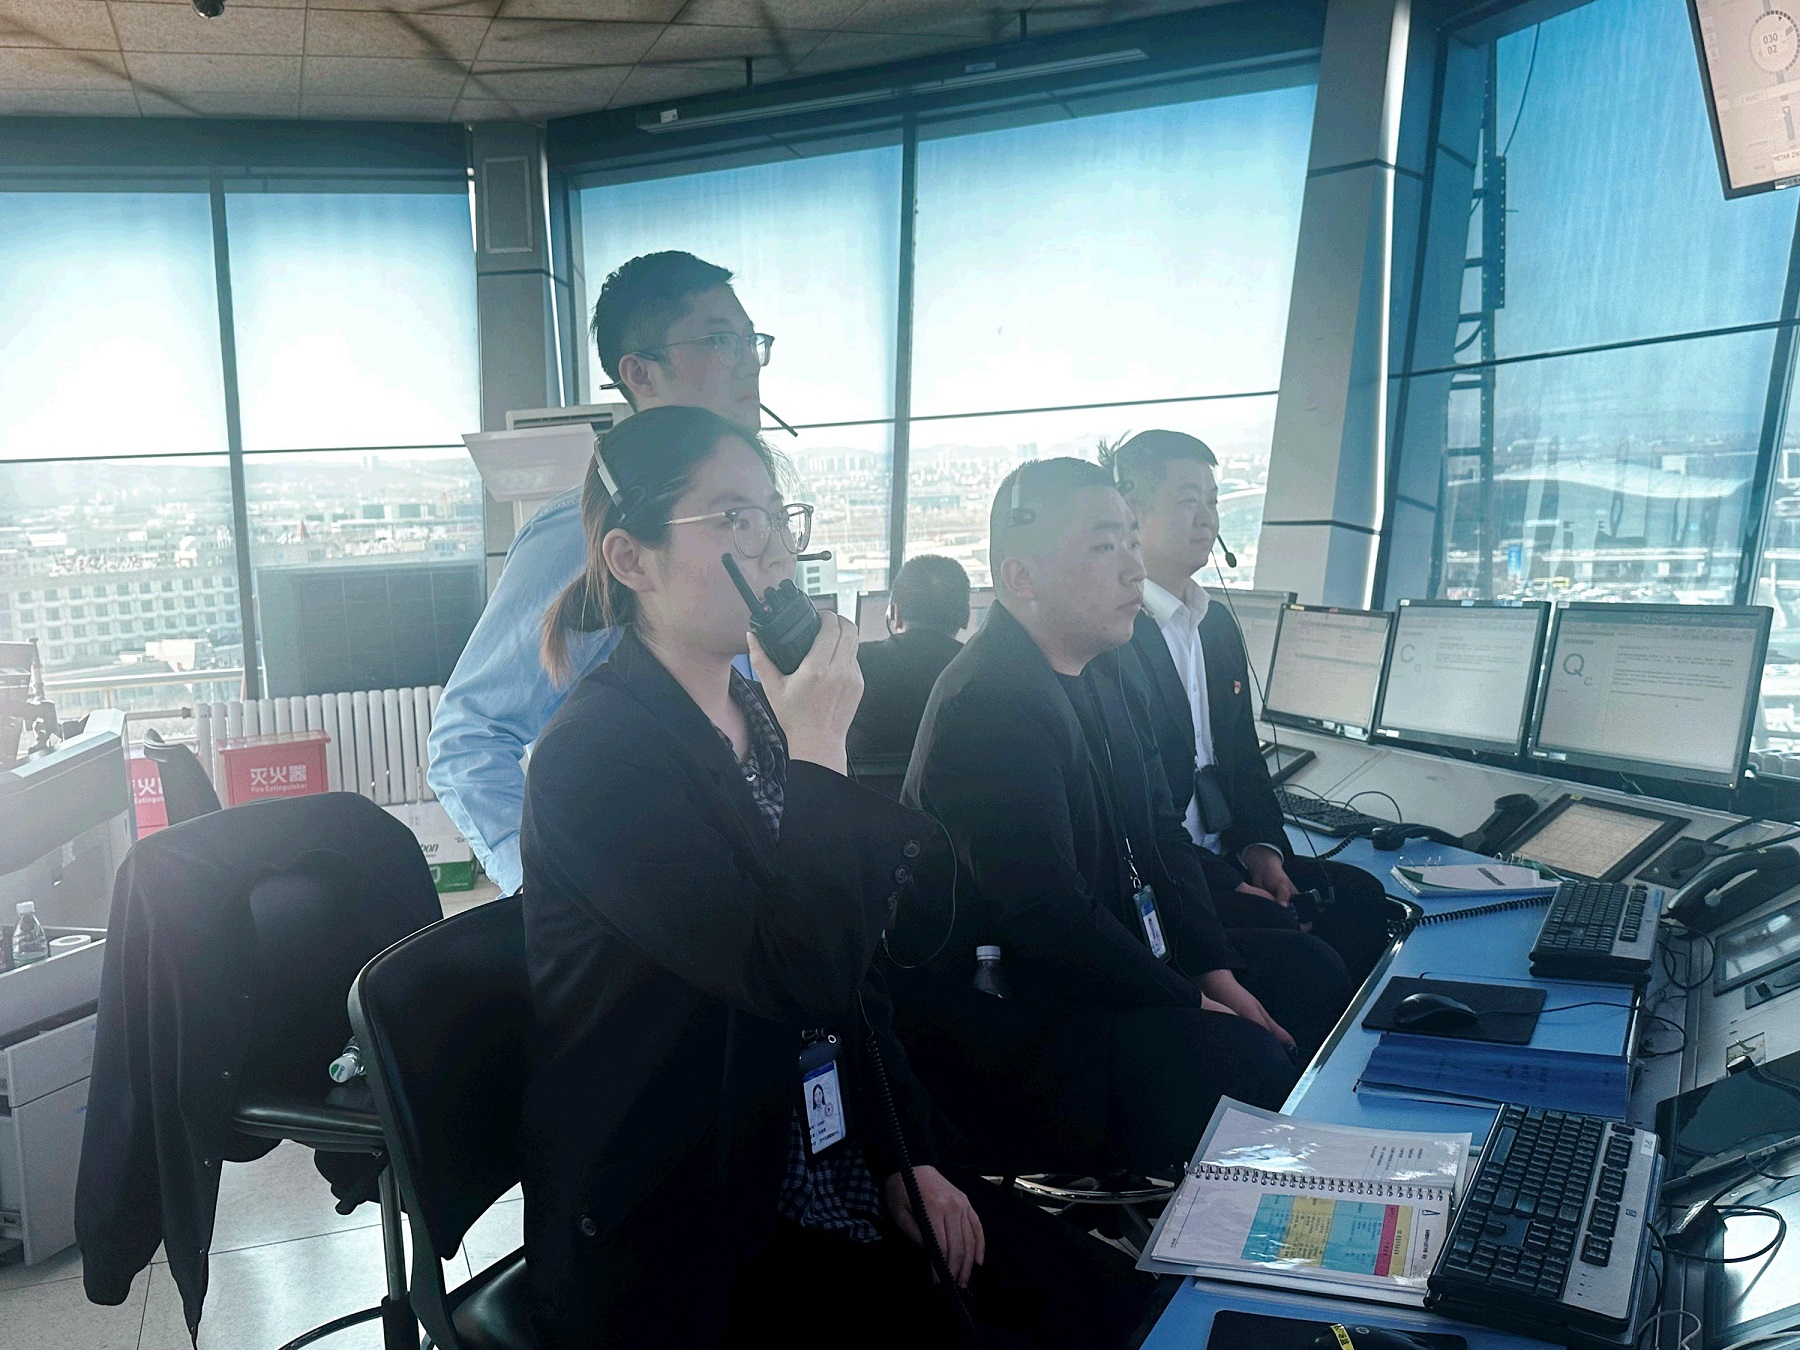 新疆空管局空管中心终端管制中心塔台管制一、二室积极配合乌鲁木齐国际机场飞行区管理部开展道面巡检工作